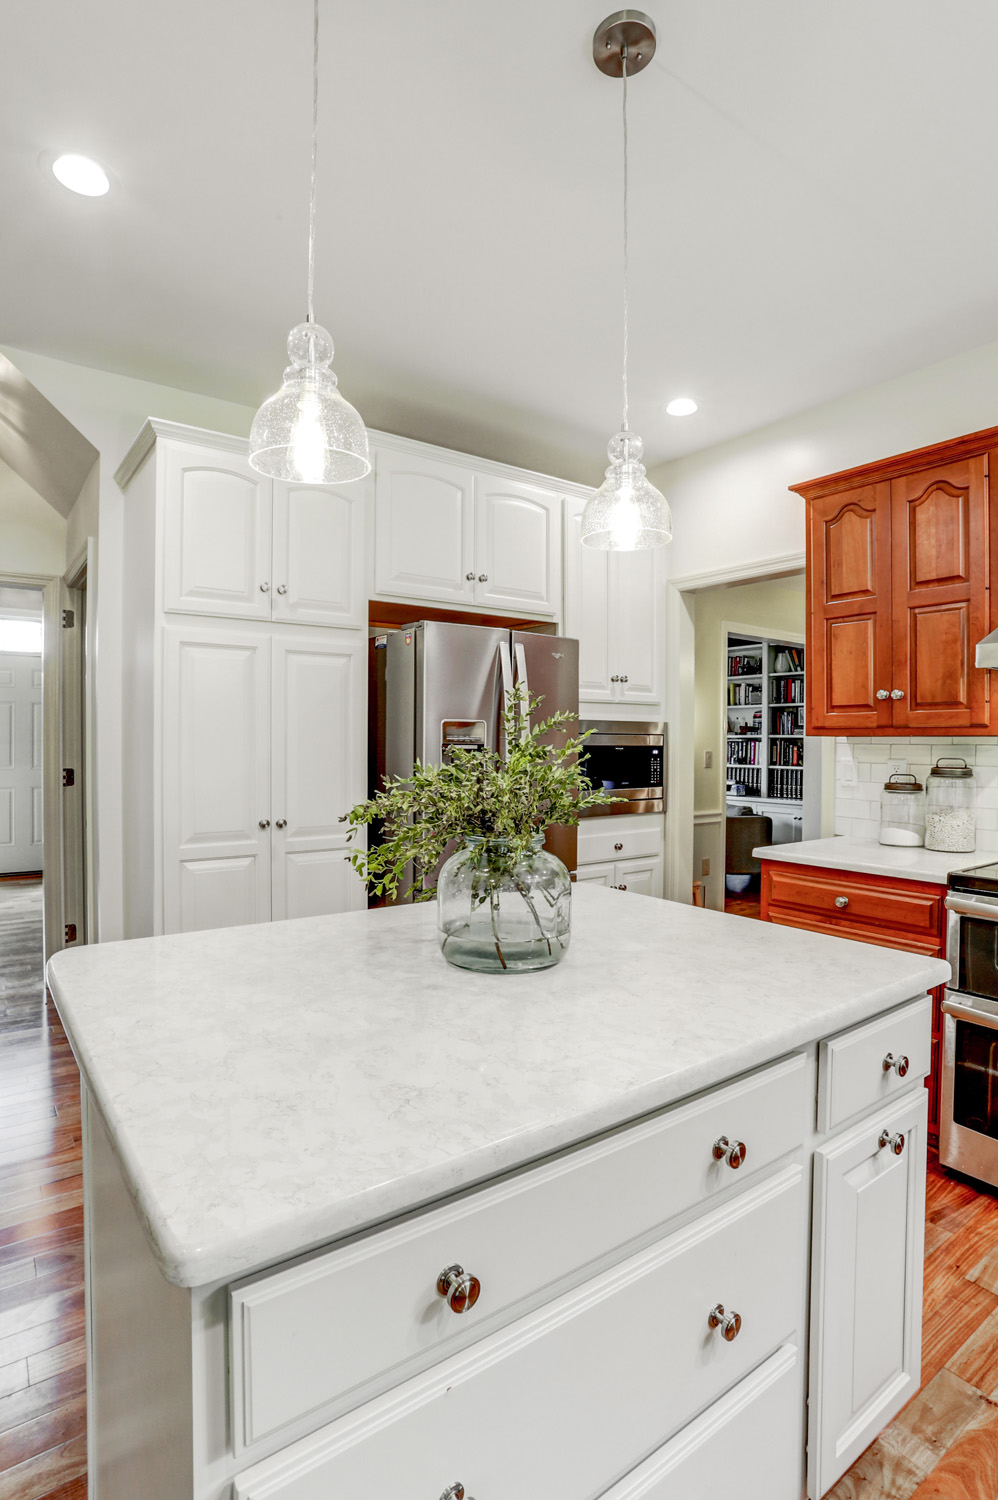 New kitchen island with quartz countertop in Centerville Kitchen Refresh